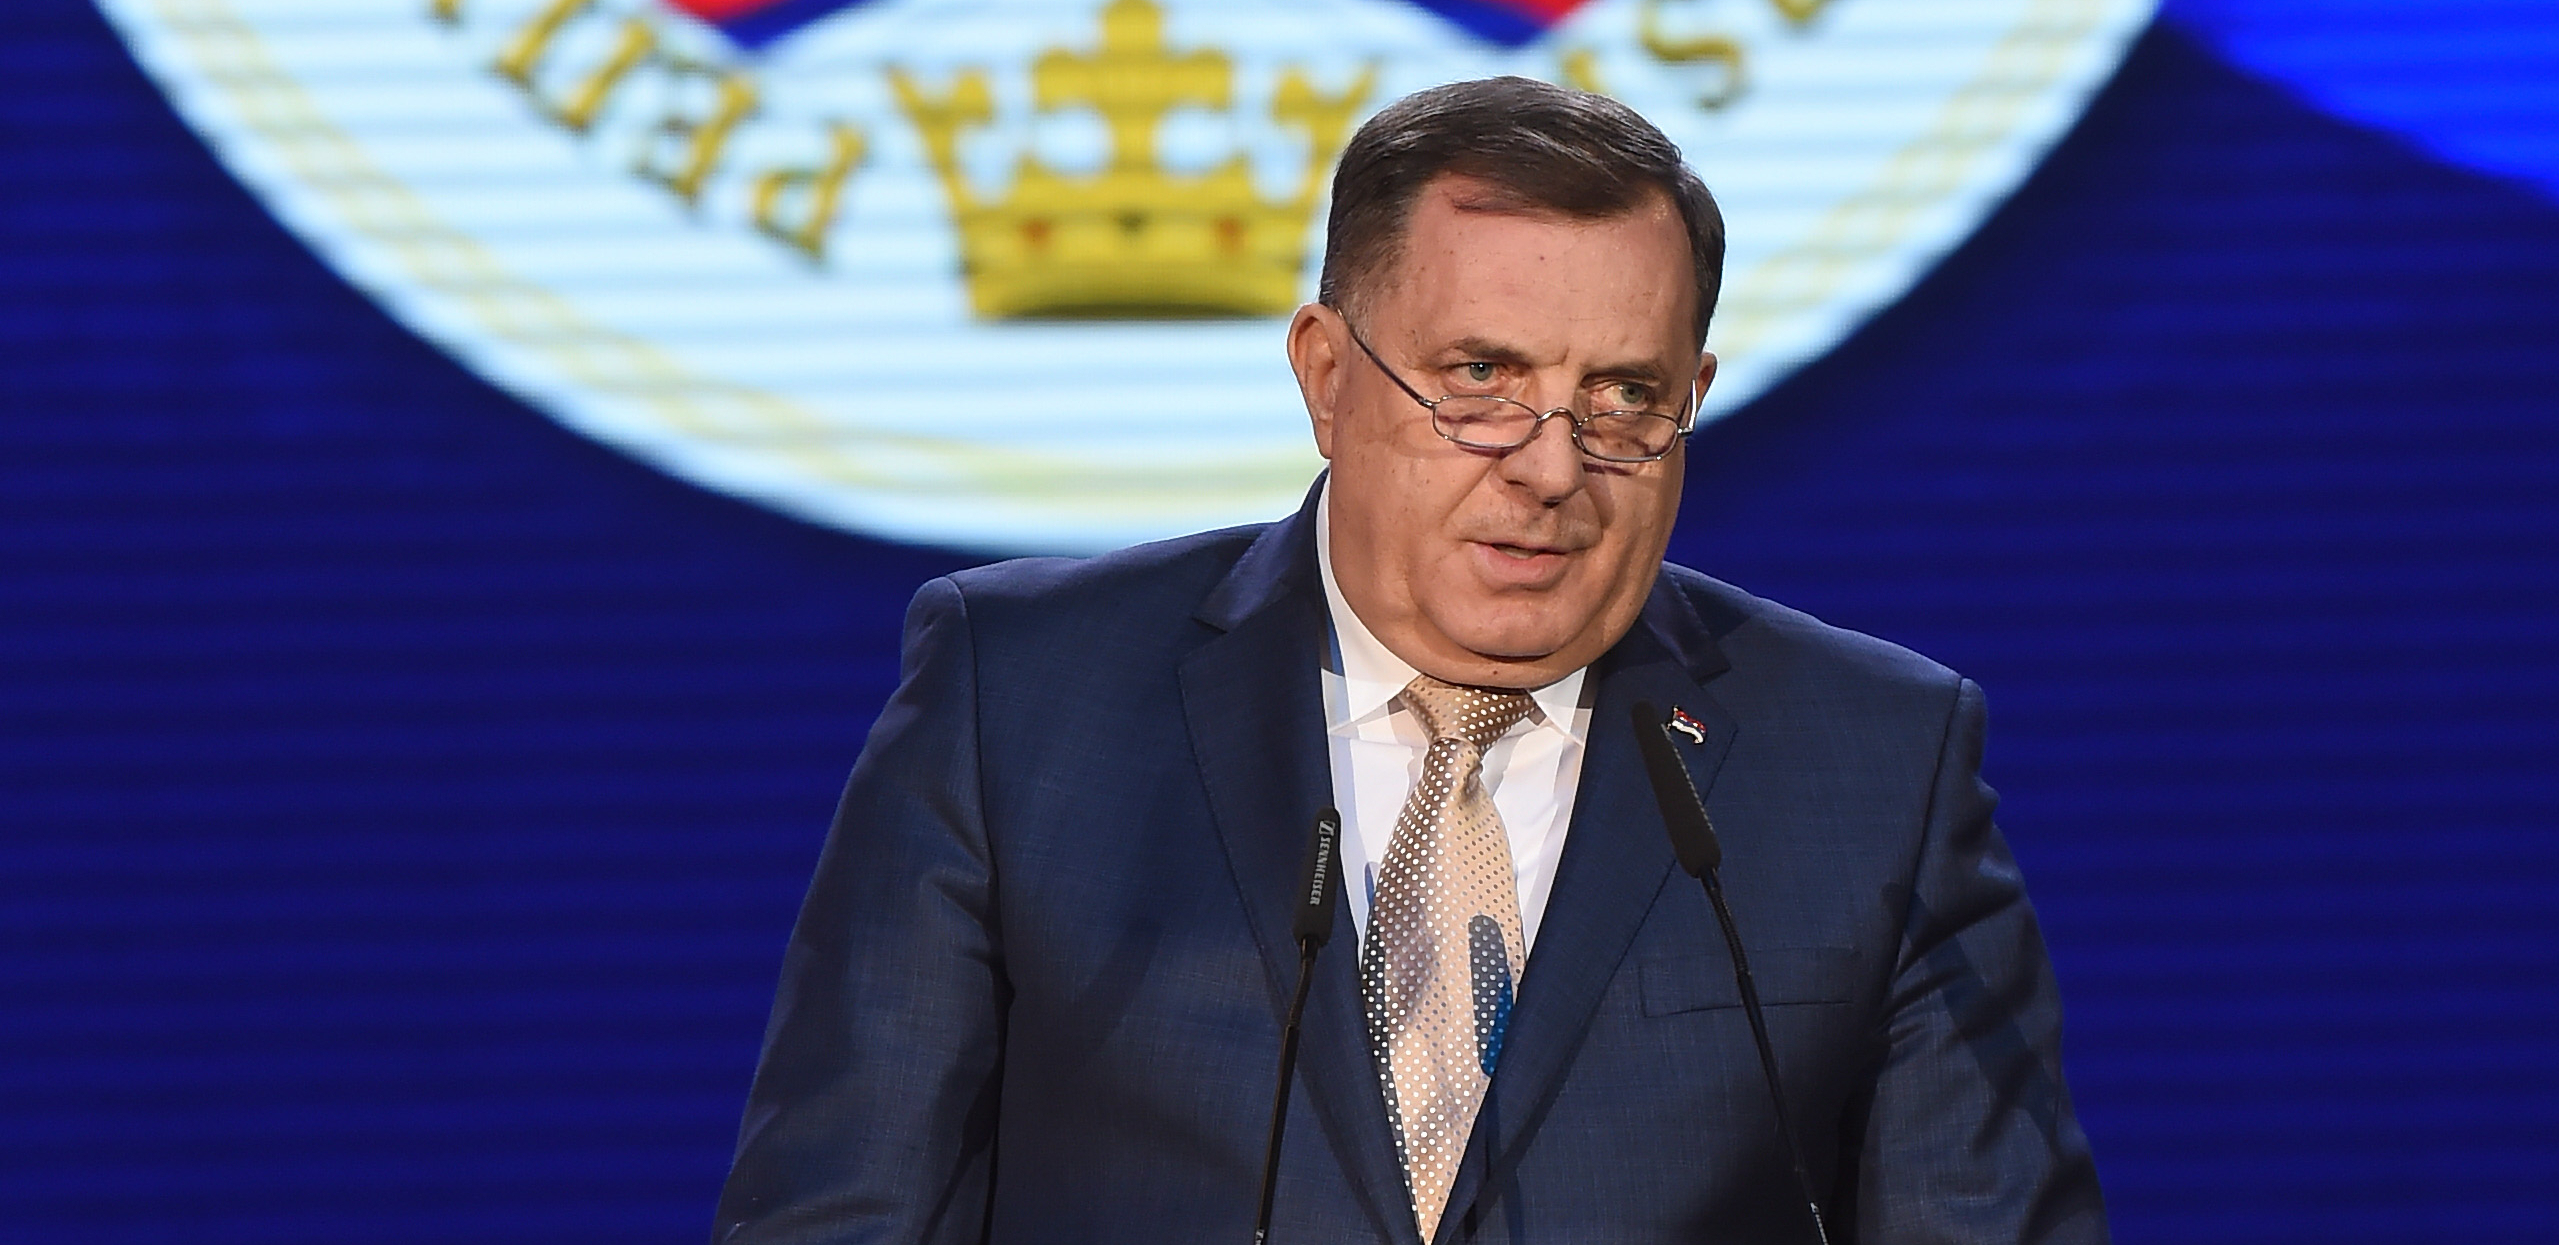 DAN SEĆANJA NA ŽRTVE HOLOKAUSTA Dodik: Srpski narod najskuplje platio slobodu i opstanak!